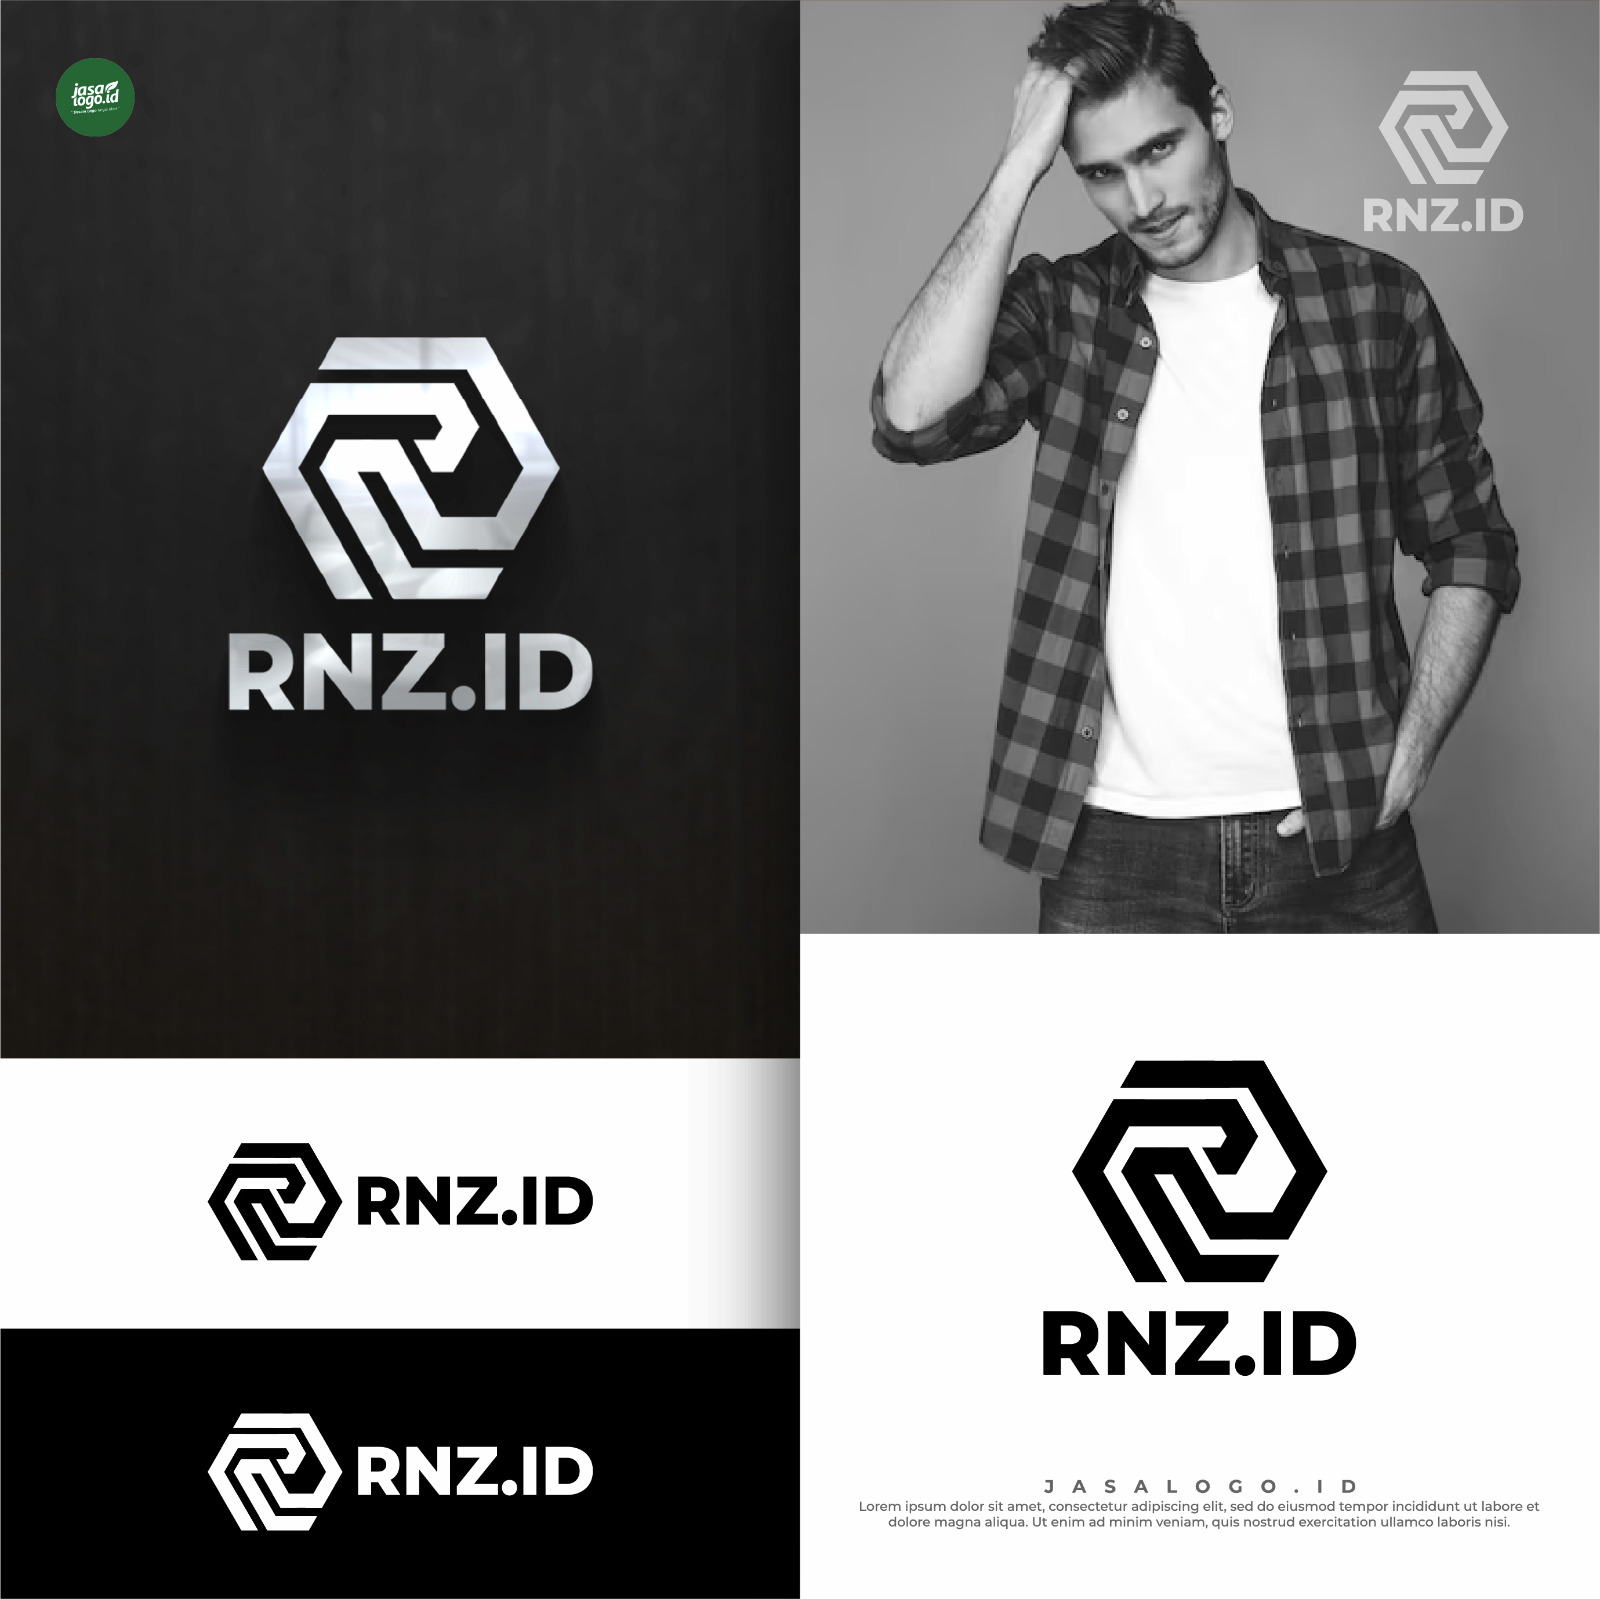 Logo Pakaian untuk RNZ.ID